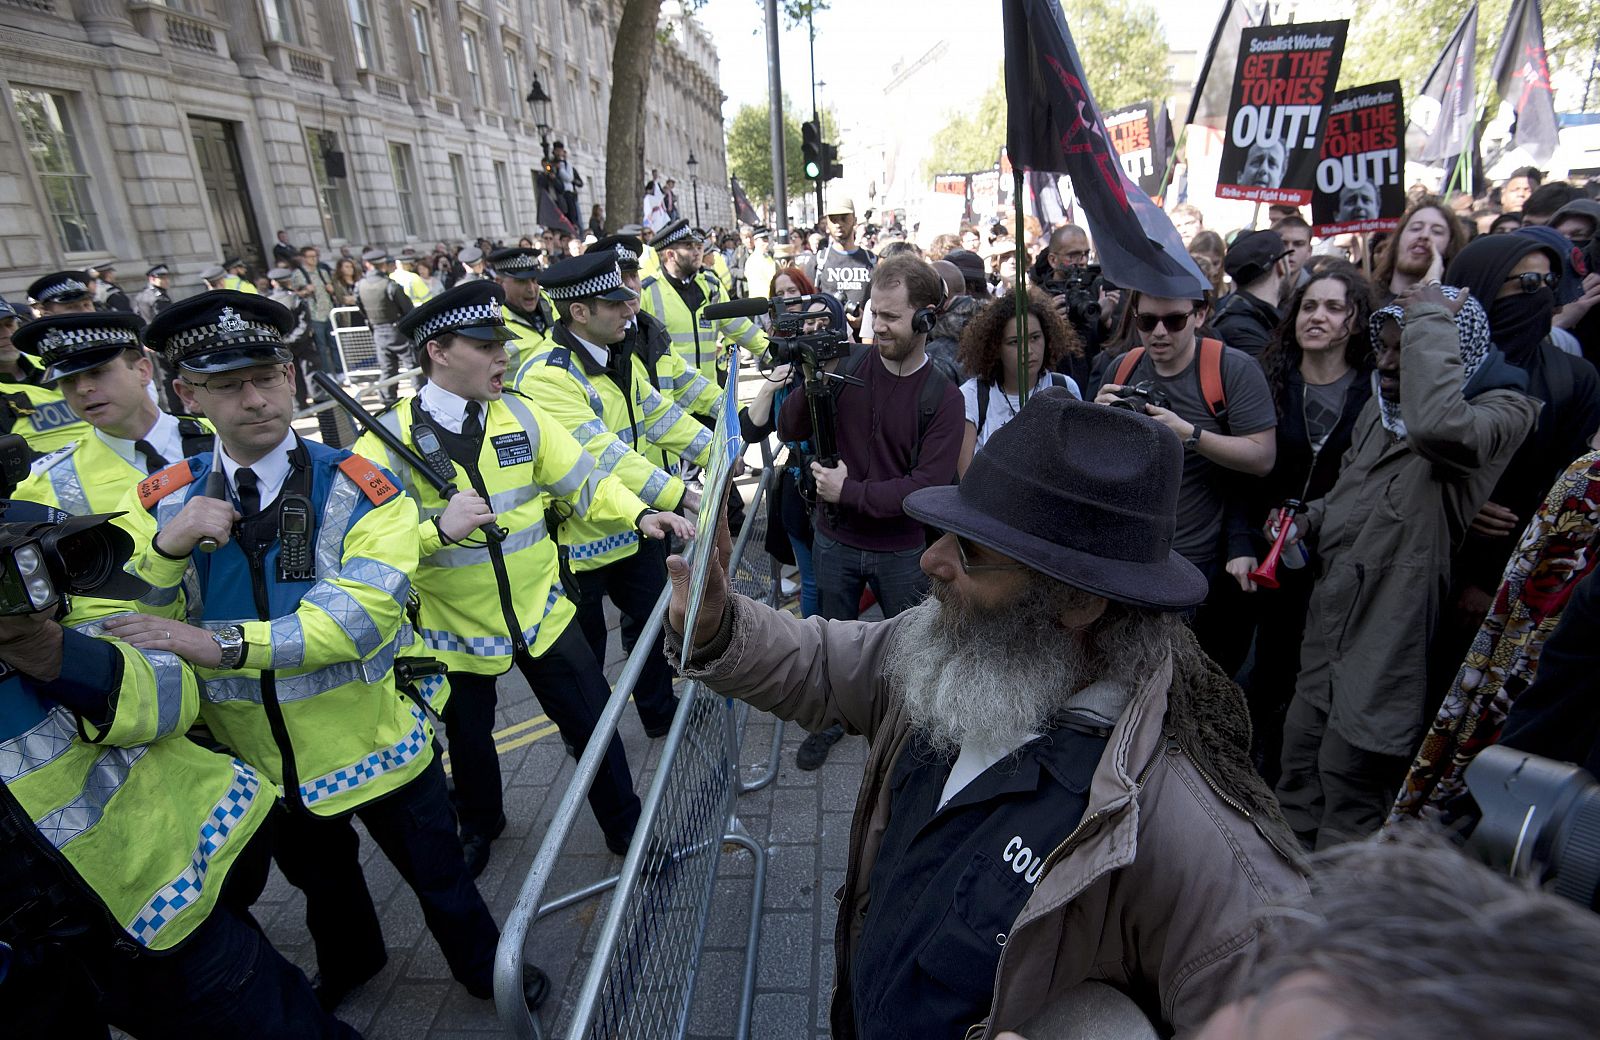 Momento de la protesta ante Downing Street contra el Gobierno del primer ministro conservador David Cameron.